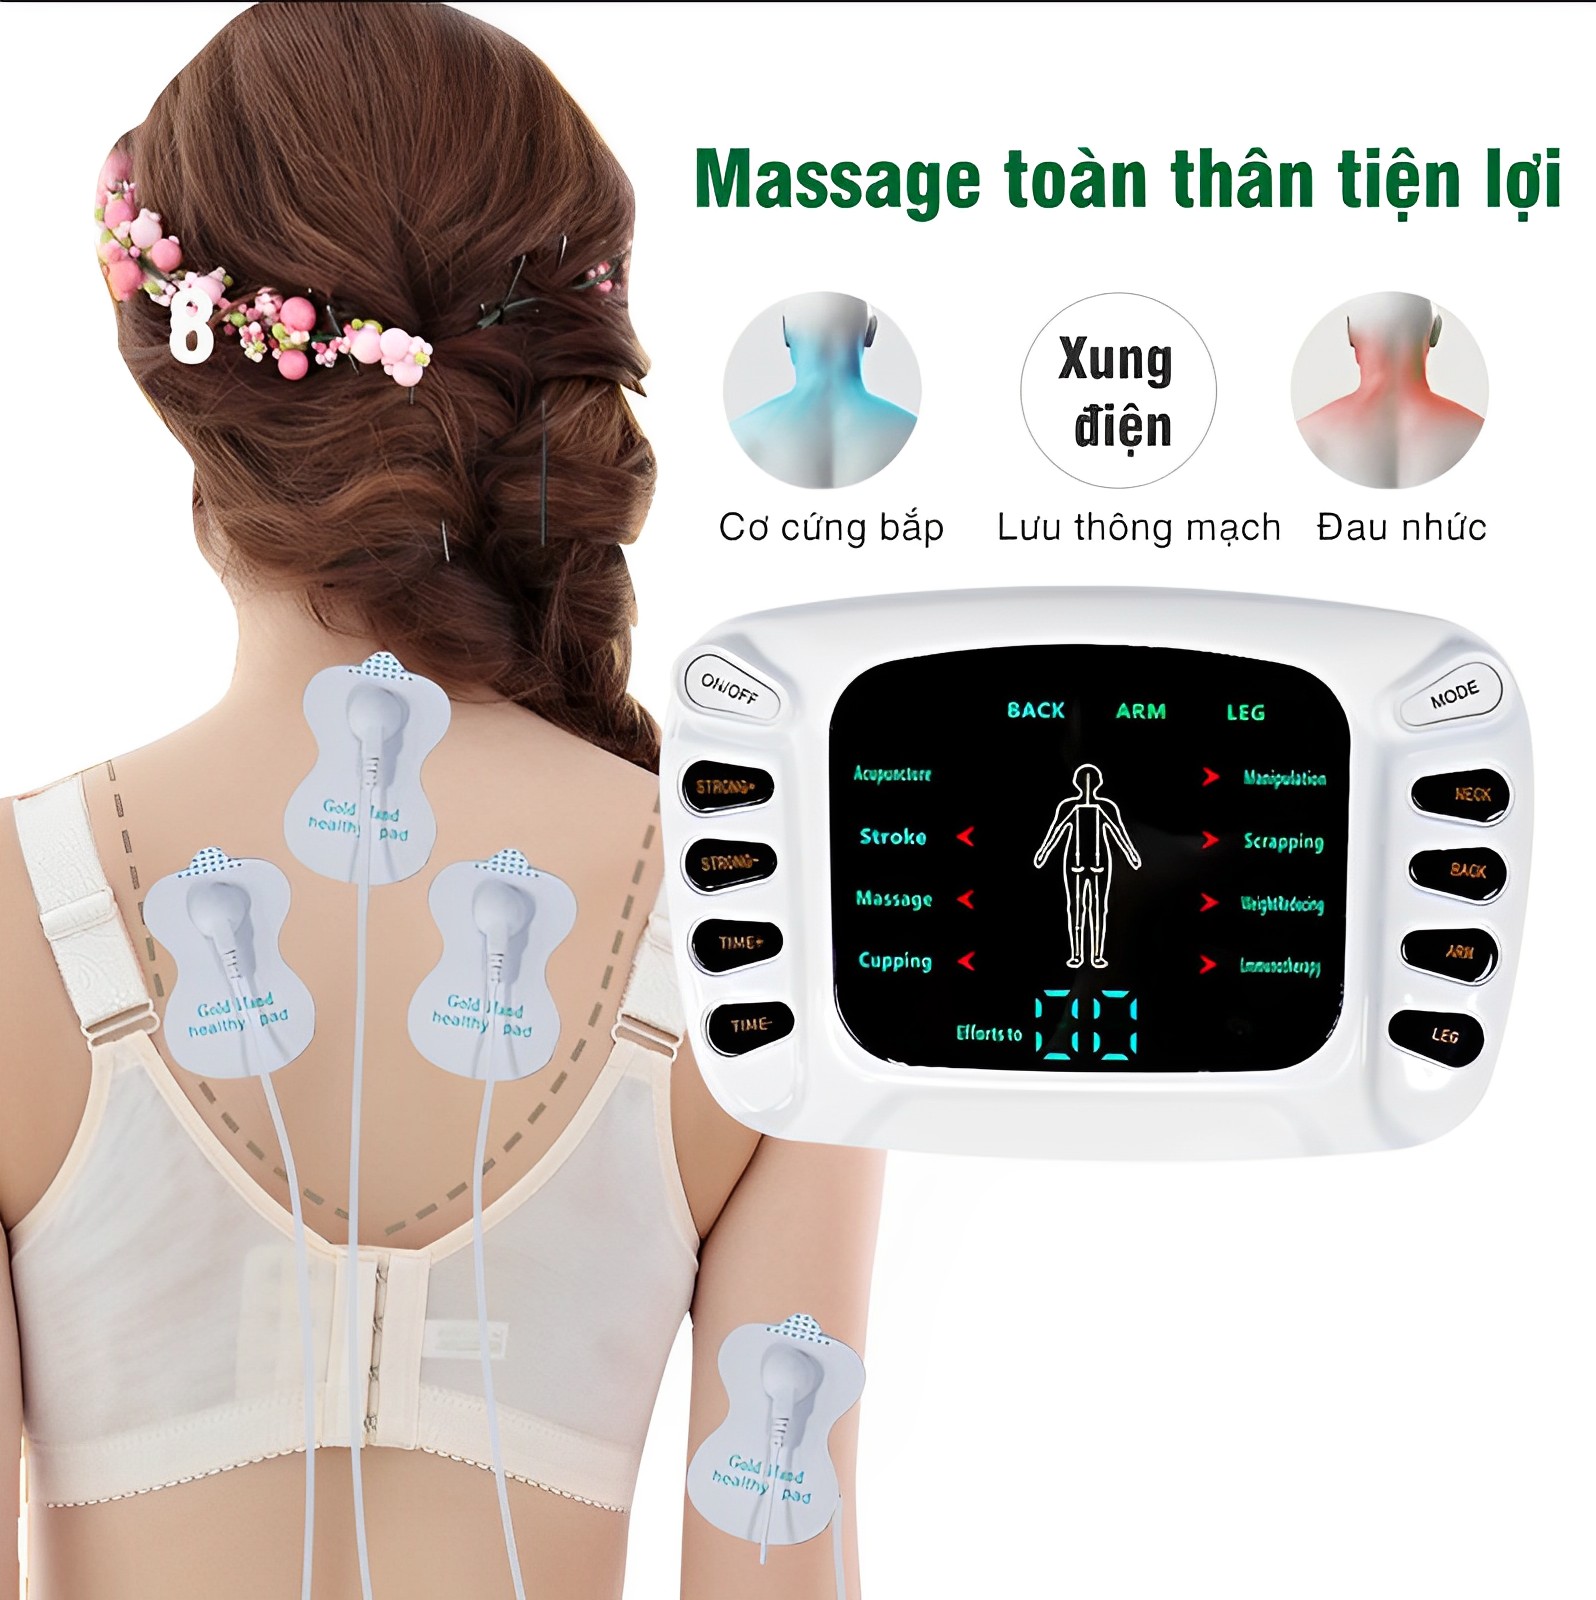 Máy xung điện trị liệu,máy massage xung điện YTK-309,với 6 đầu ra và đôi dép massage, máy điện xung trị liệu,máy châm cứu giảm đau nhức cơ thể nhanh chóng